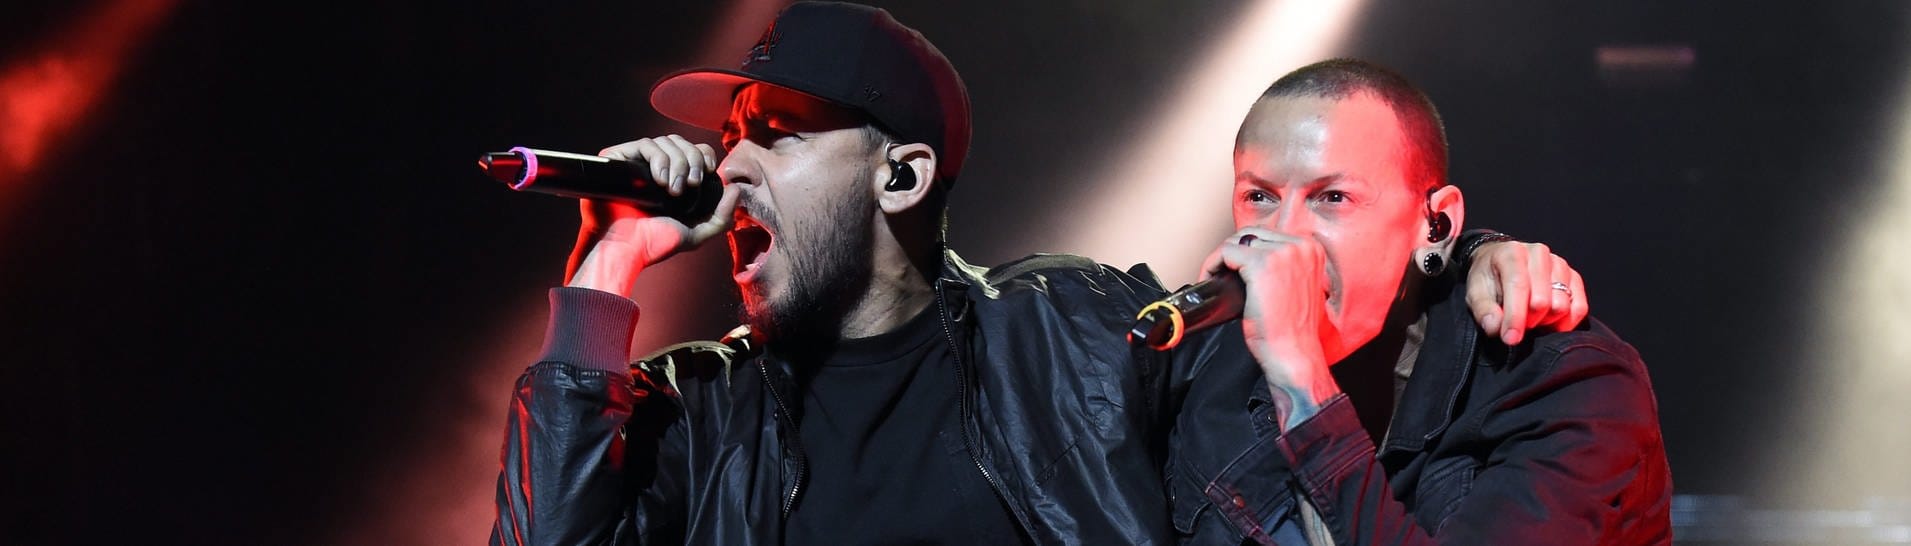 Linkin Park beim FM4 Frequency Festival 2015: Rapper Mike Shinoda und Sänger Chester Bennington